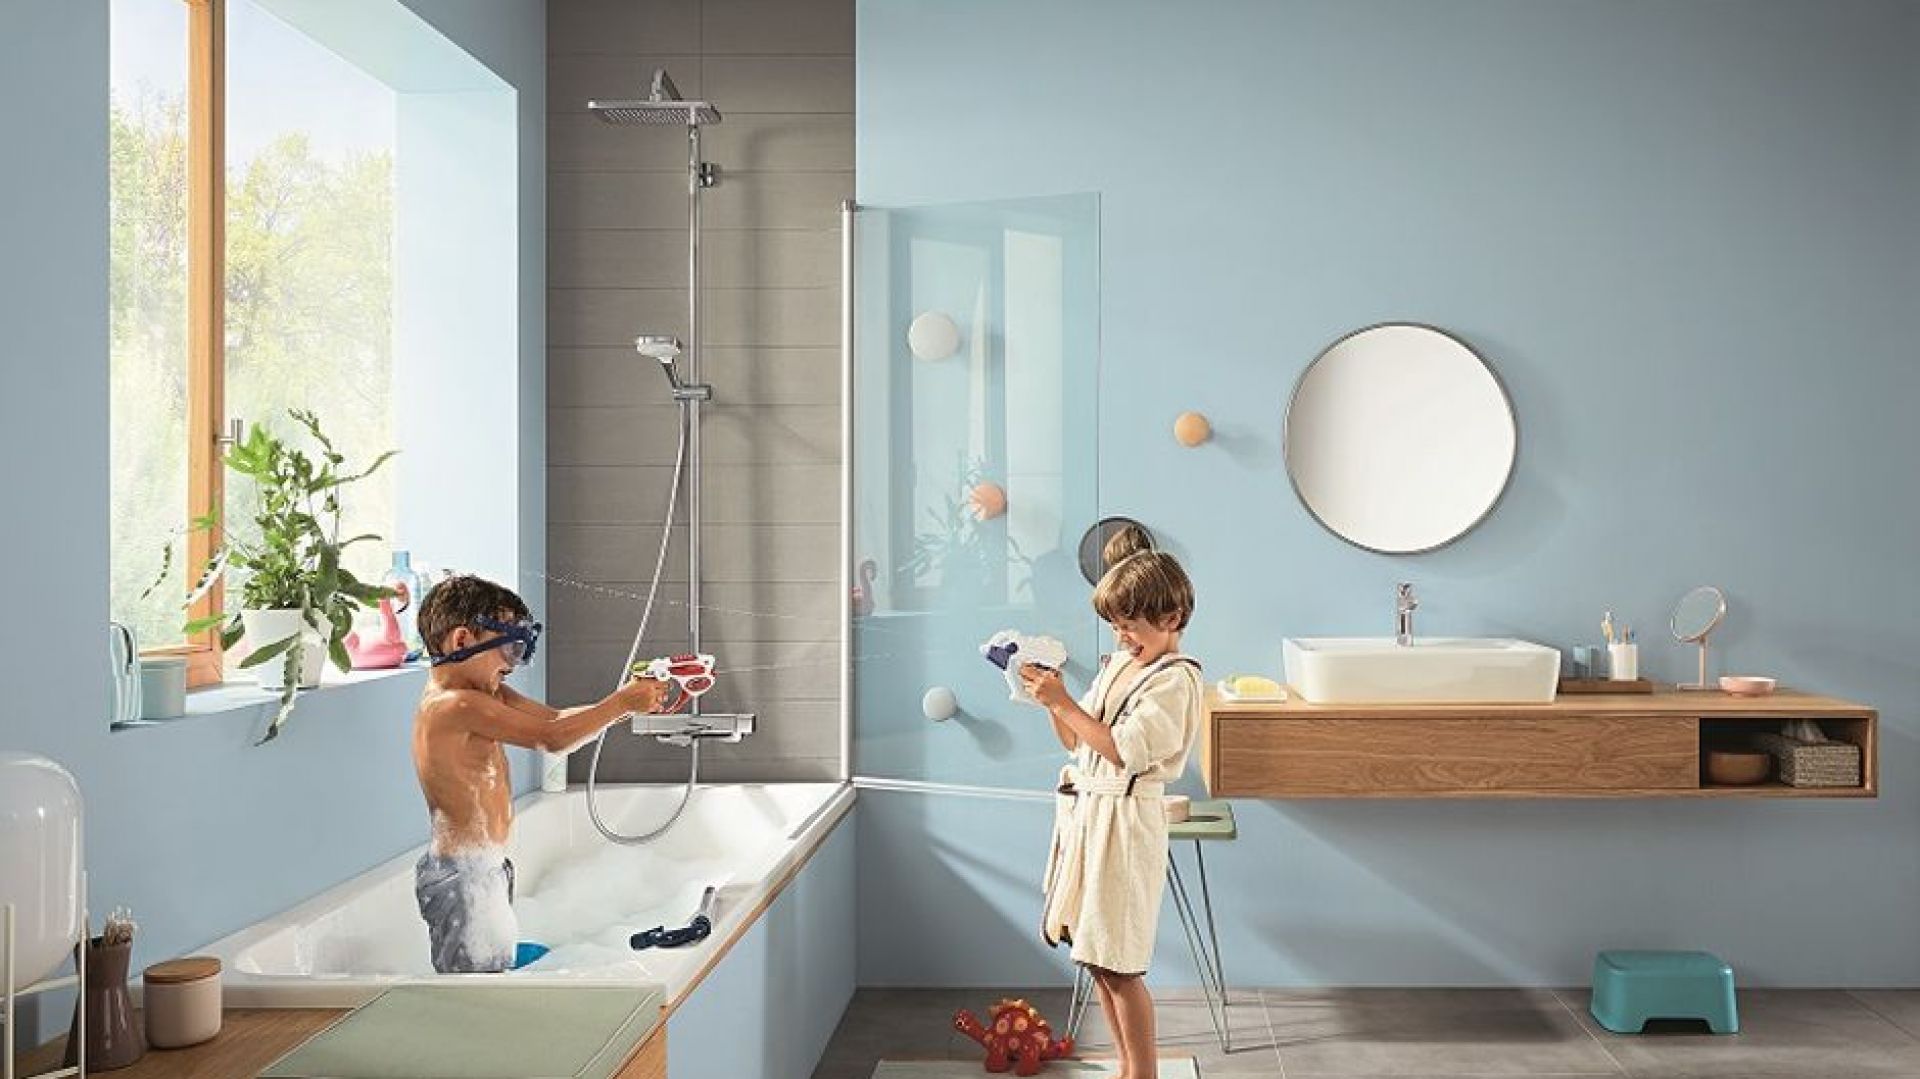 Łazienka rodzinna - przyjemność kąpieli pod prysznicem